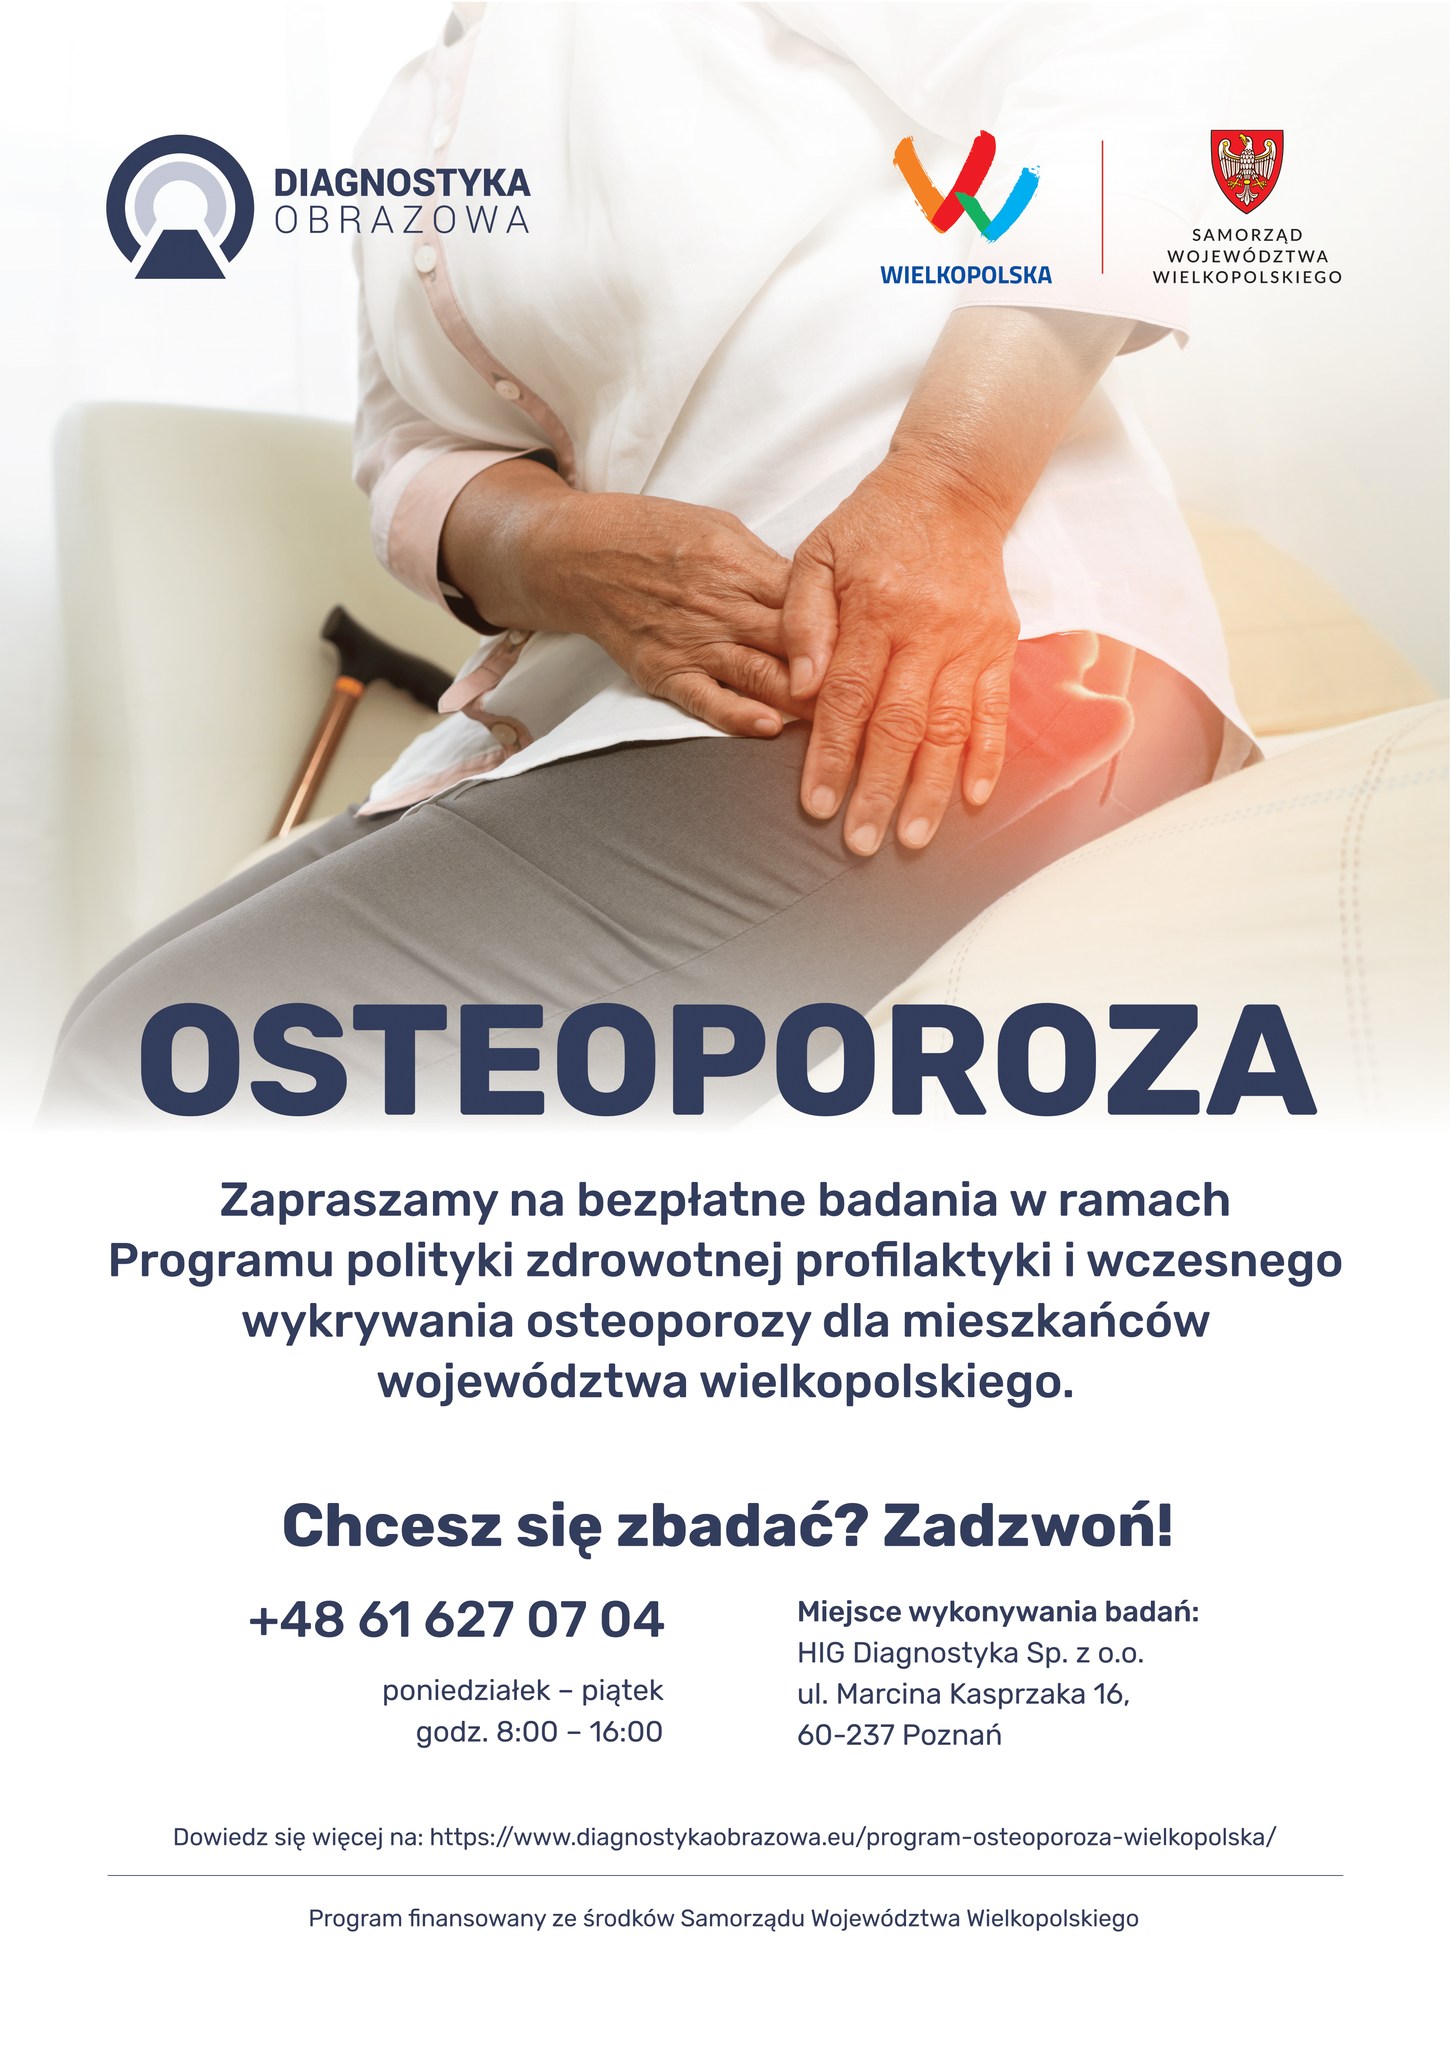 Plakat informujący o Programie profilaktyki osteoporozy, treść plakatu poniżej w artykule.